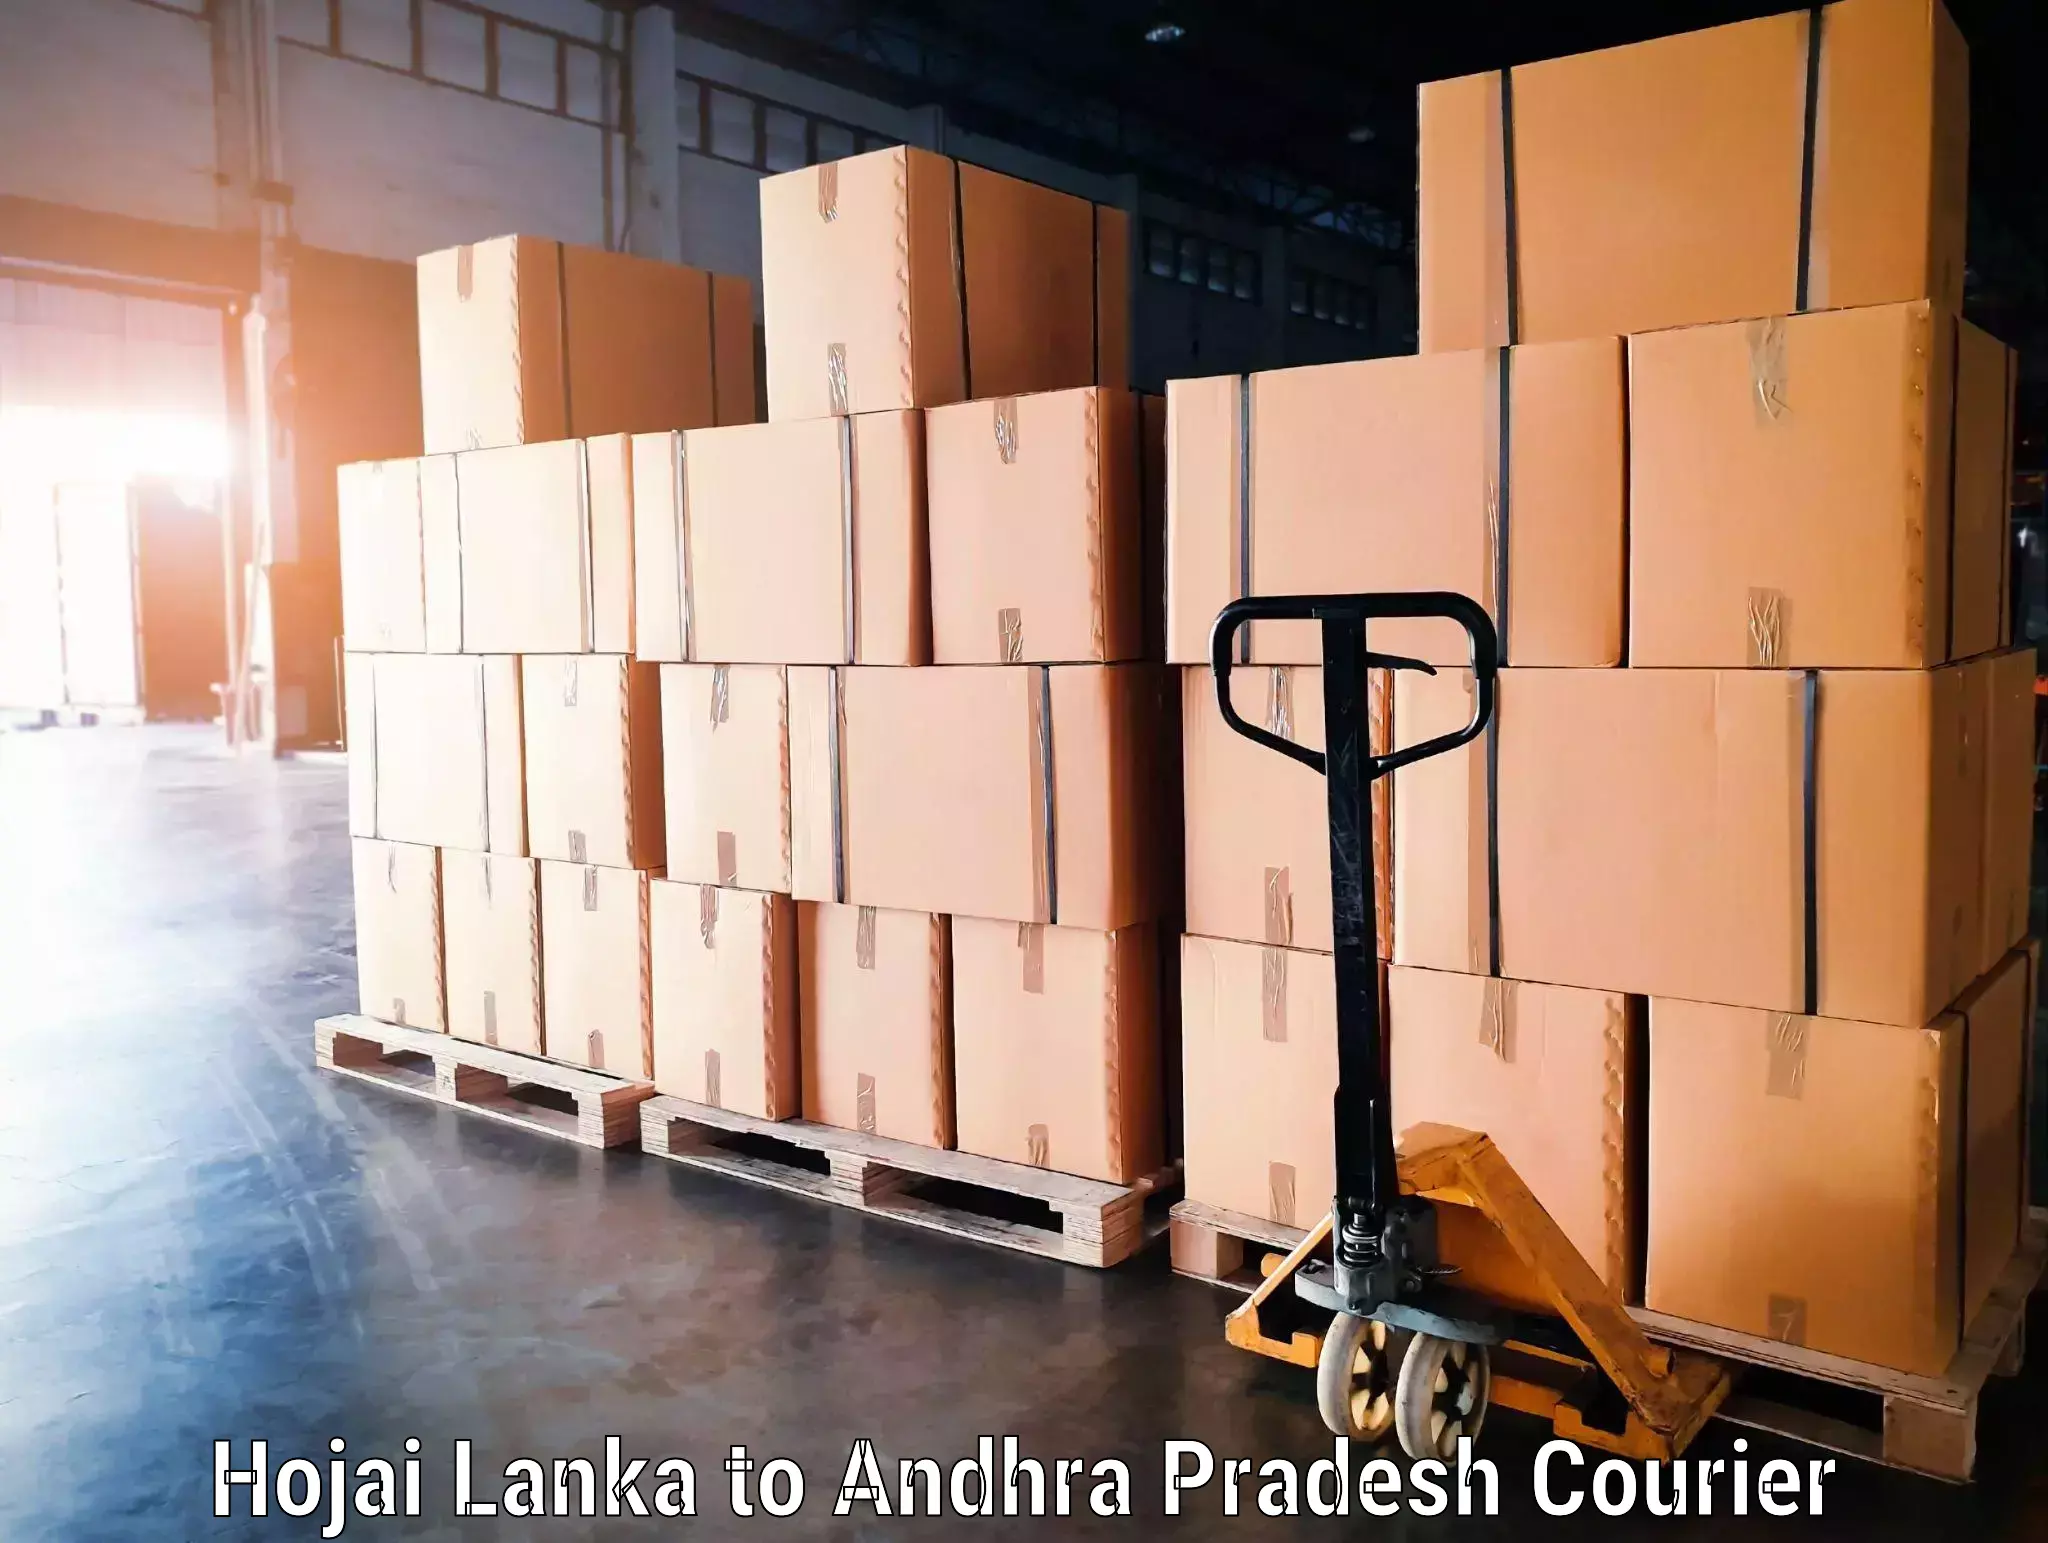 Regional luggage transport Hojai Lanka to Markapur